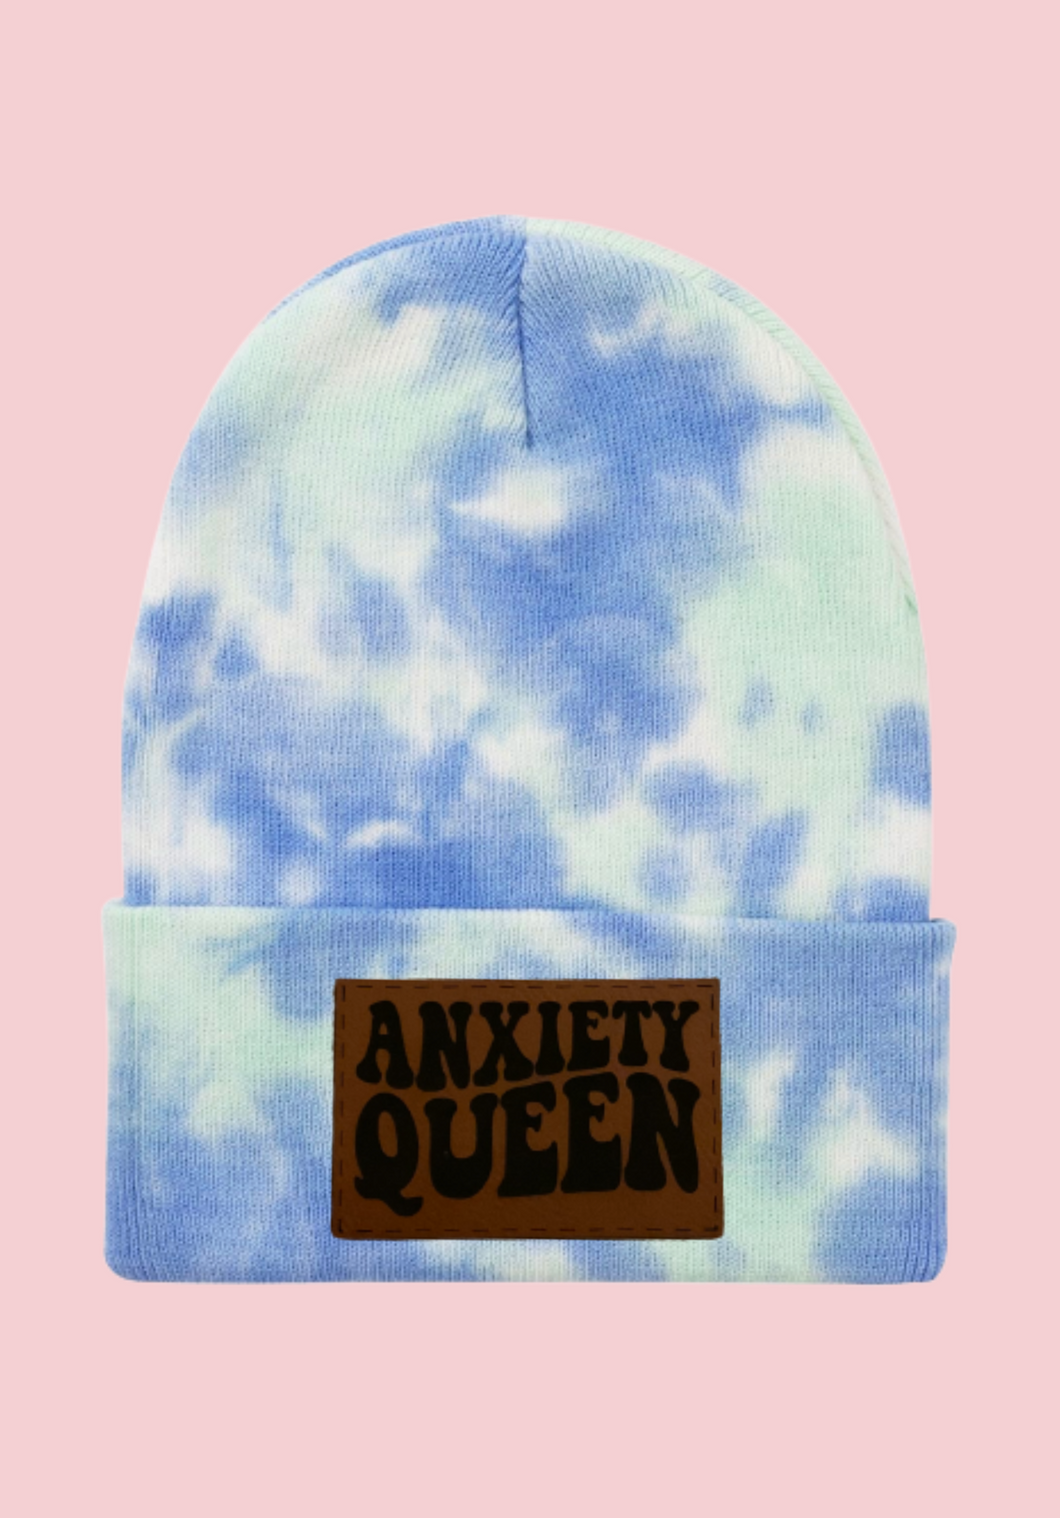 Anxiety queen hat/beanie